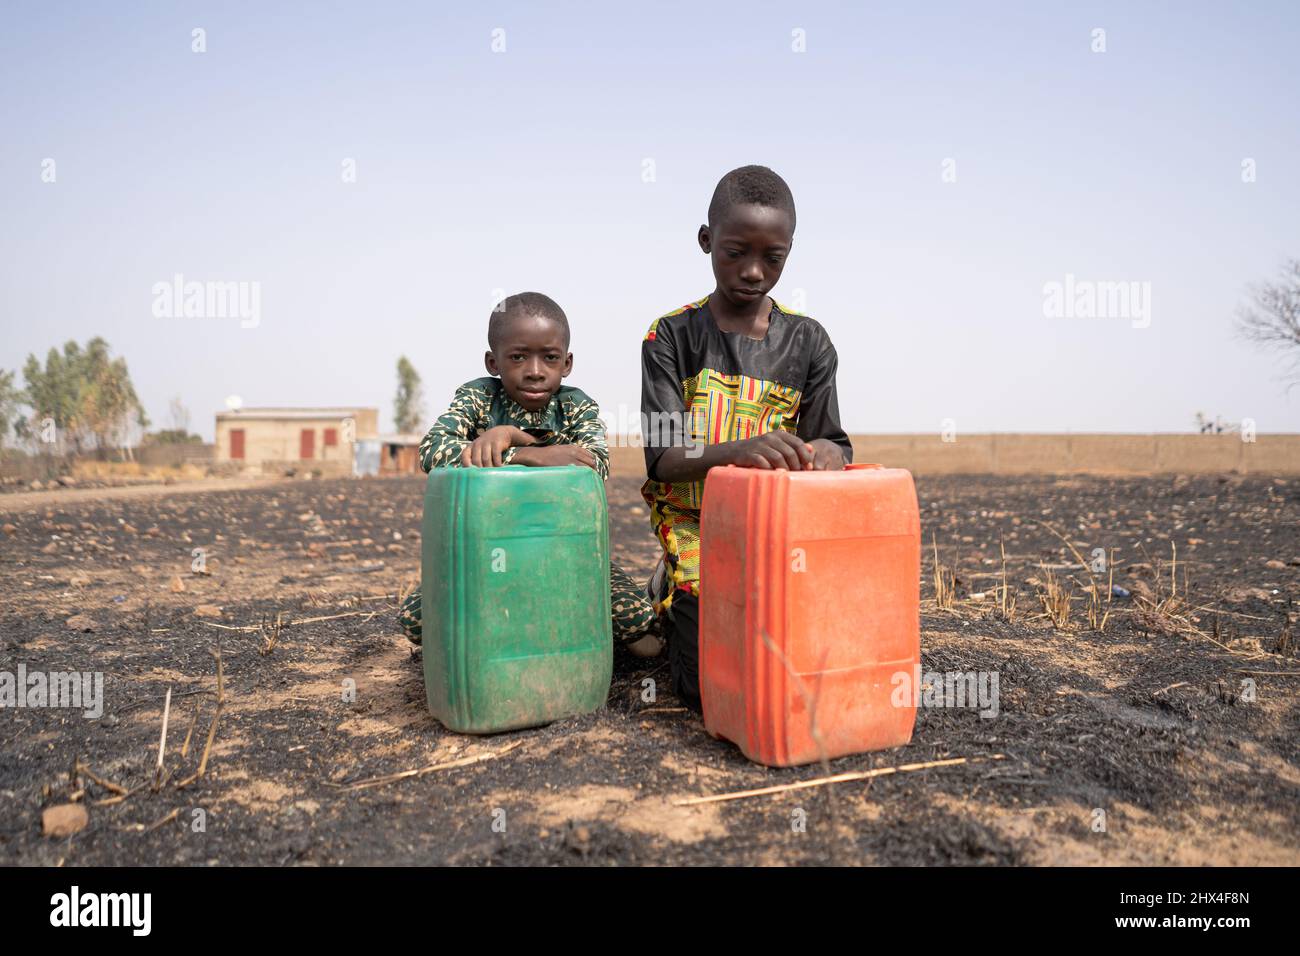 Deux garçons africains tristes s'agenouillent dans un champ brûlé derrière leurs grandes réservoirs d'eau, regardant désespérément le sol devant eux ; la pénurie d'eau Banque D'Images